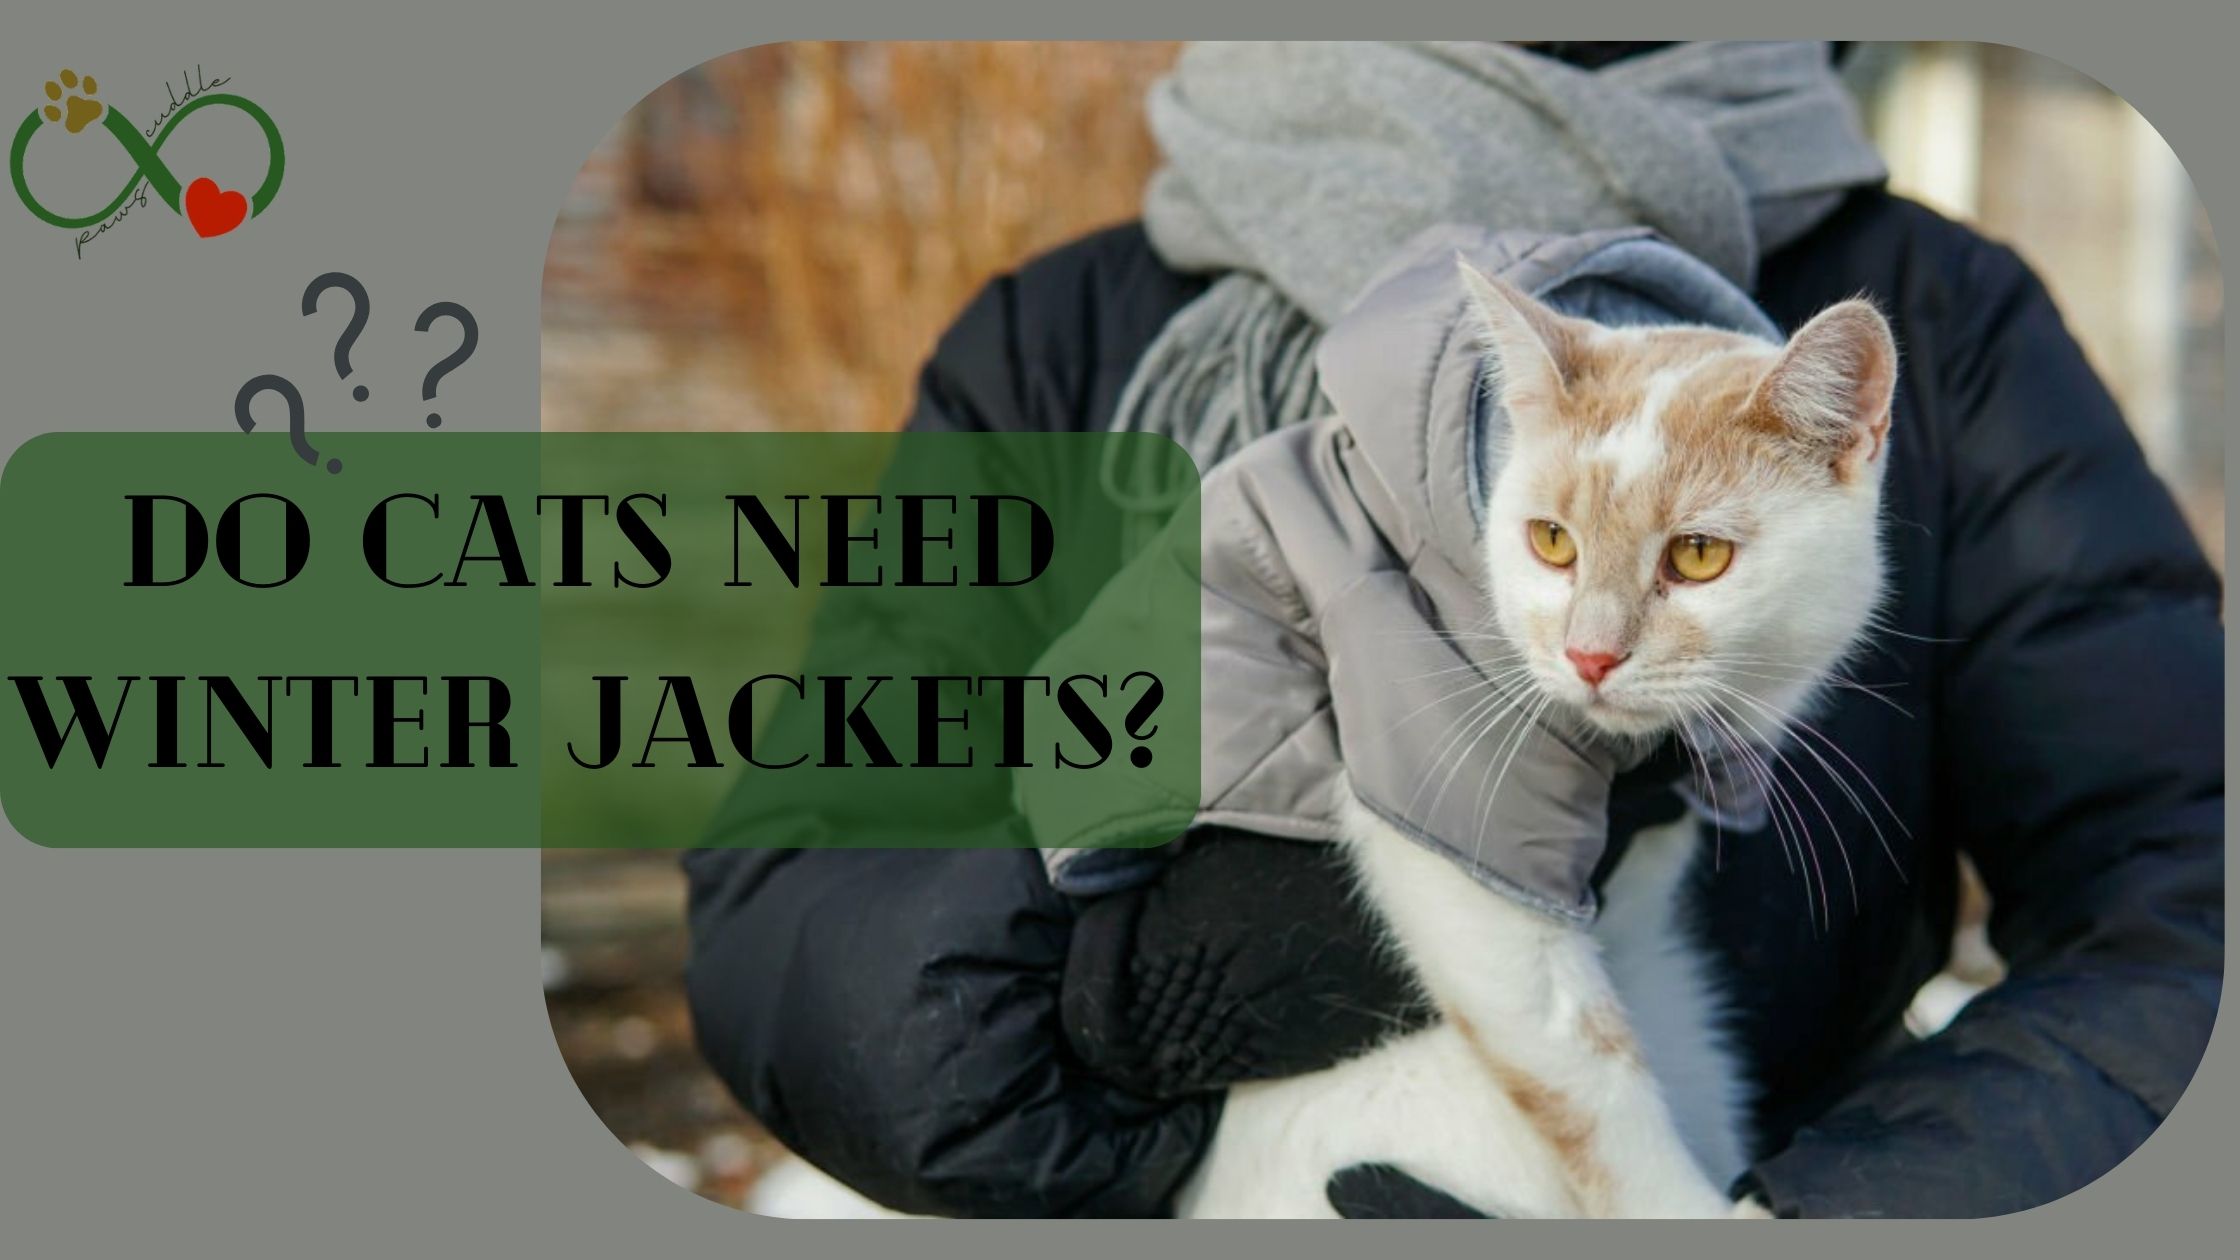 Do cats need winter jackets?